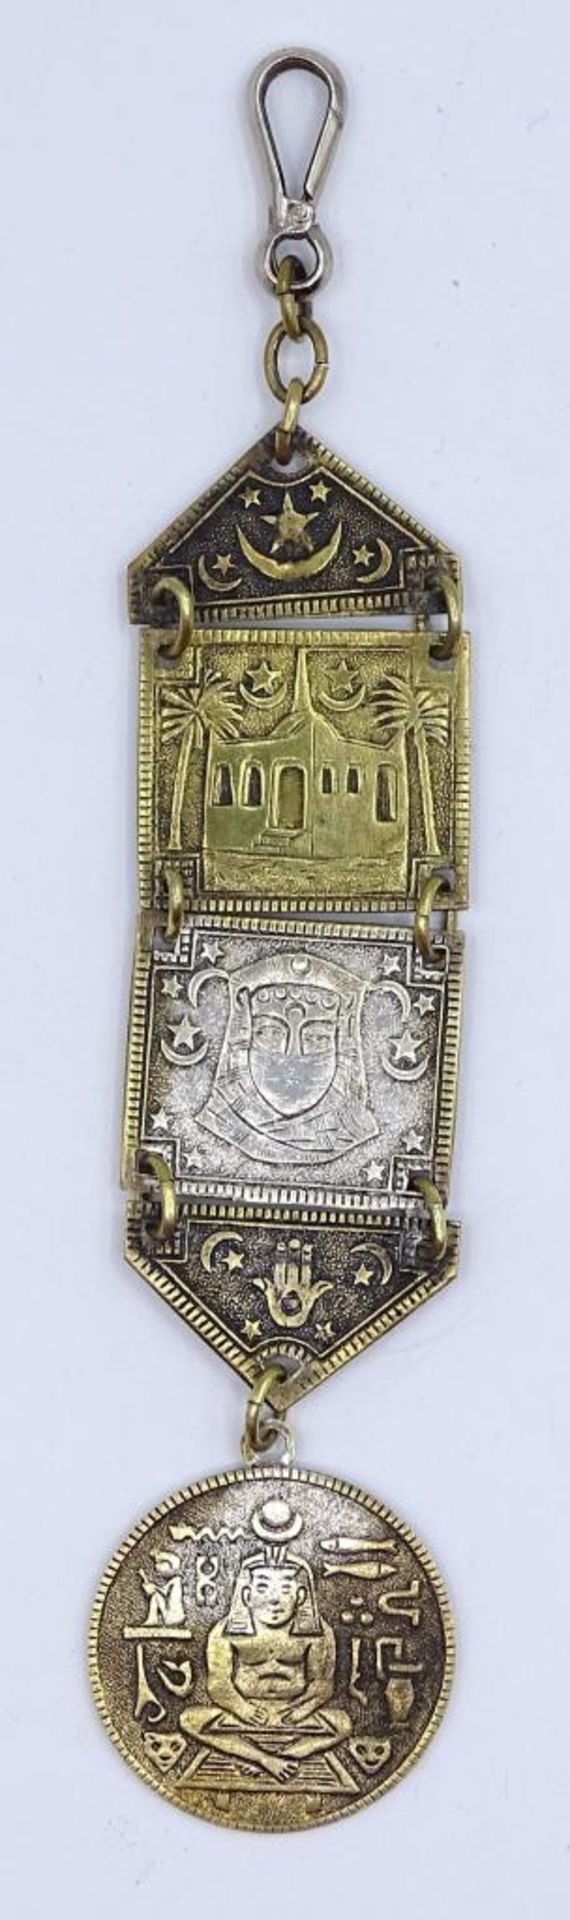 Studentenzipfel mit Ägyptischen Motiven,Metall-versilbert,L- 15,5c - Bild 4 aus 6